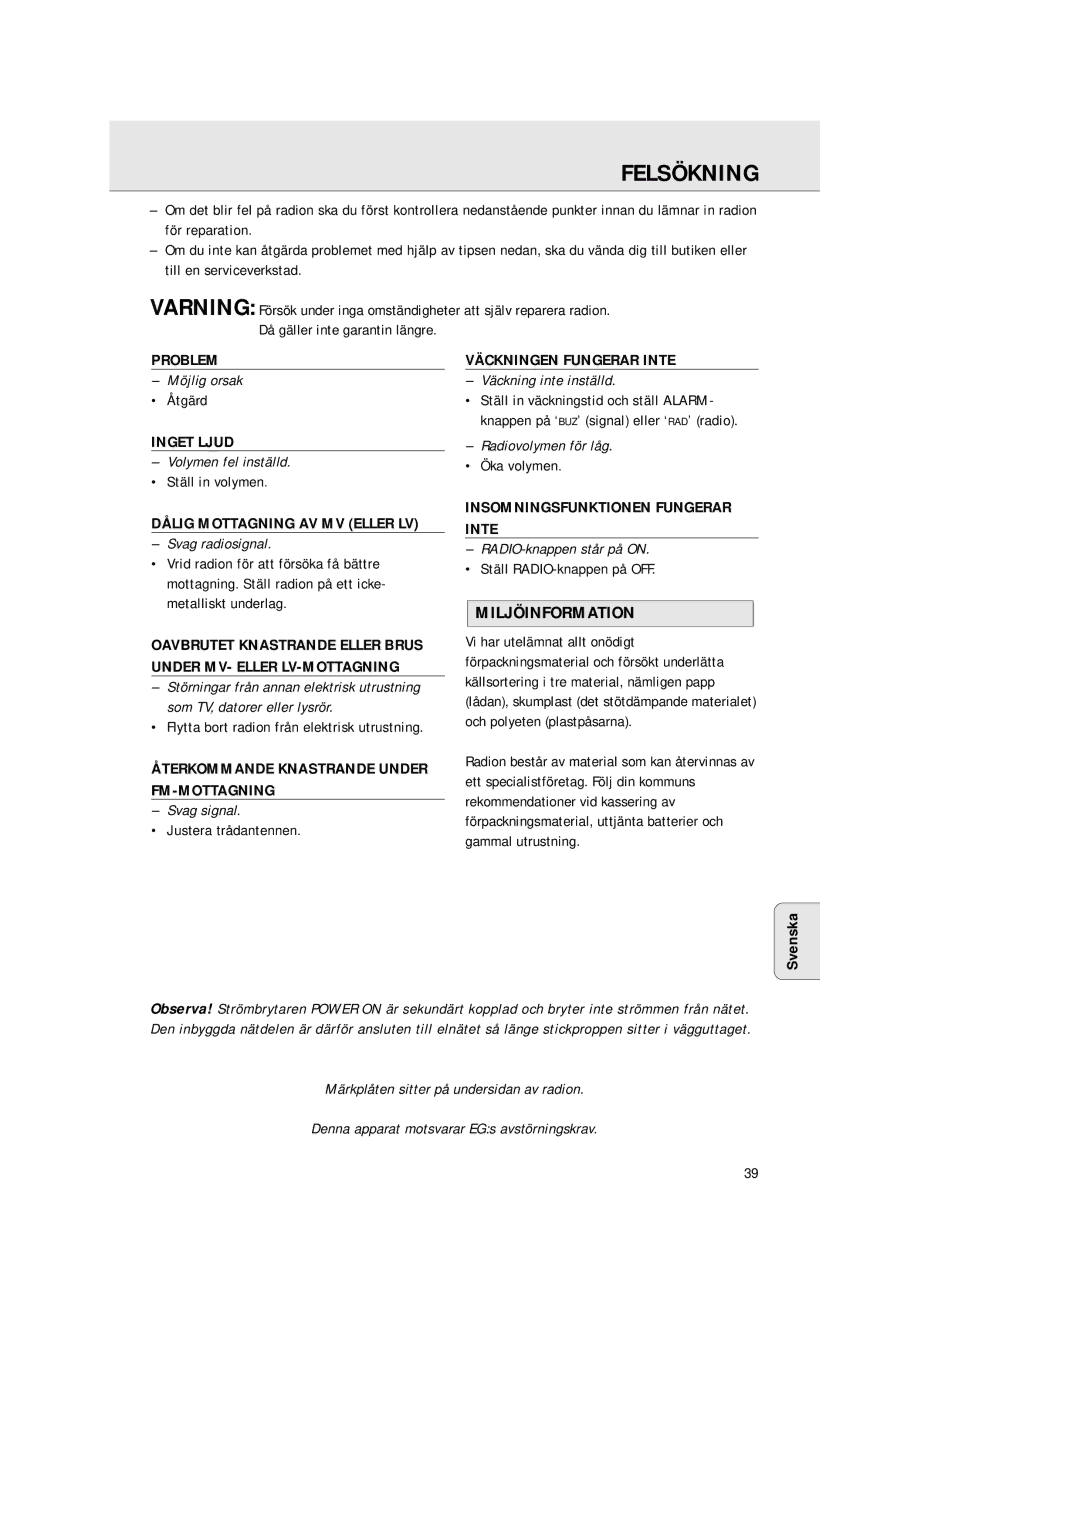 Philips AJ 3380 manual Felsökning, Miljöinformation 